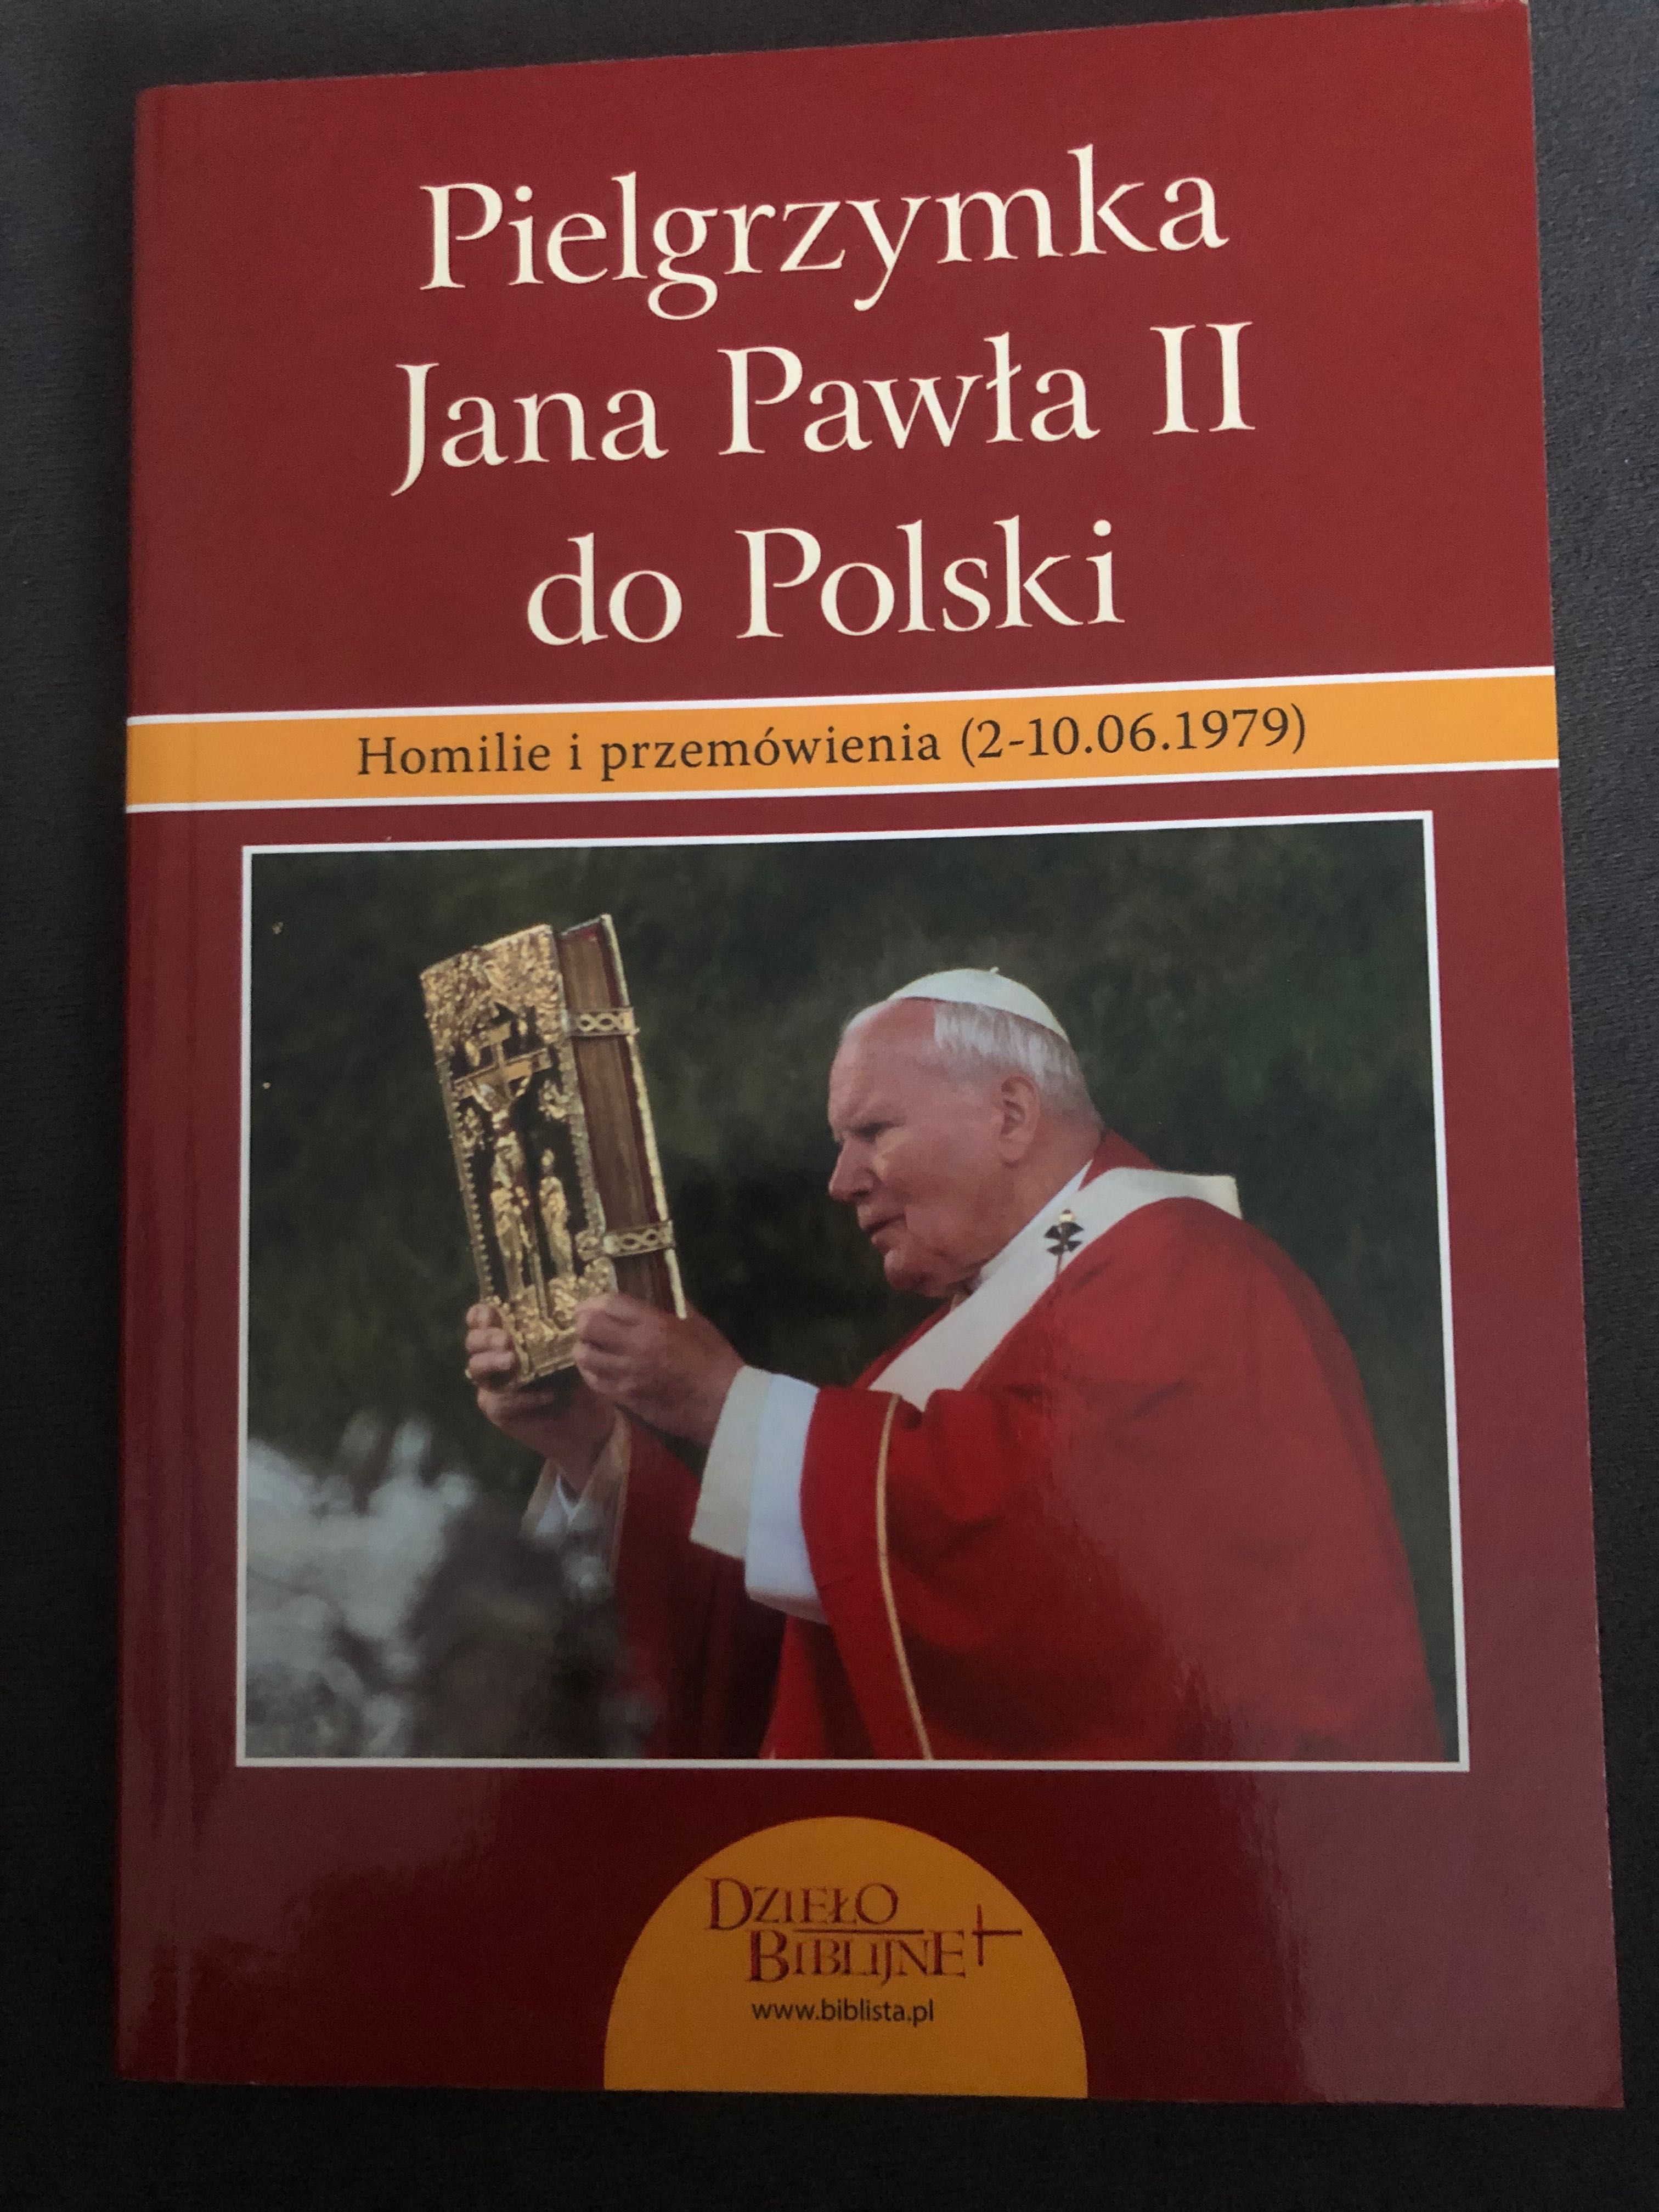 Pielgrzymka Jana Pawła II do Polski 1979 Homilie i przemówienia